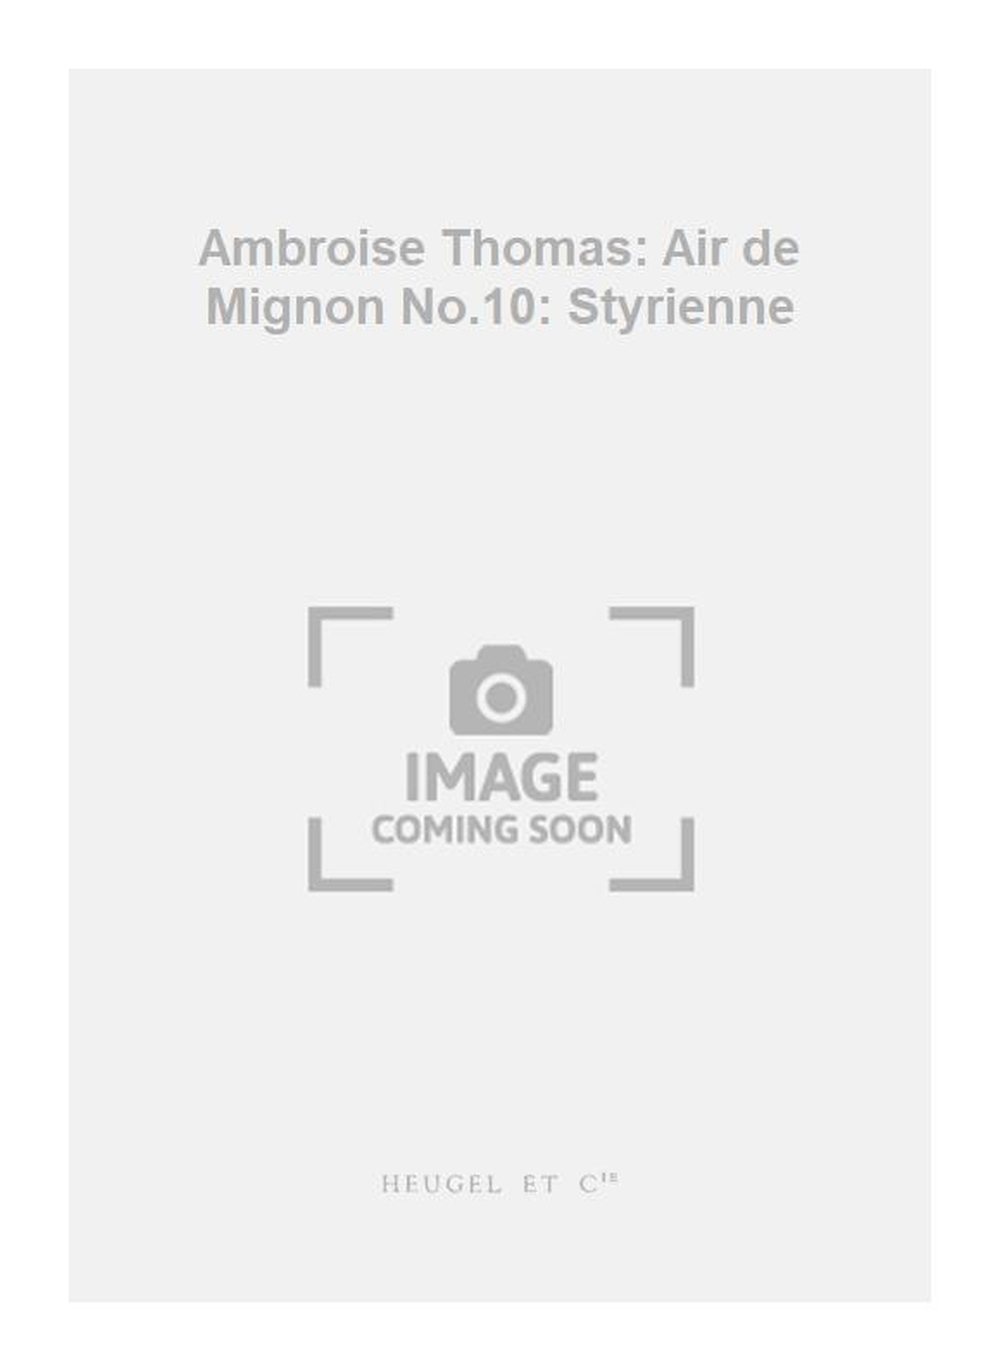 Ambroise Thomas: Ambroise Thomas: Air de Mignon No.10: Styrienne